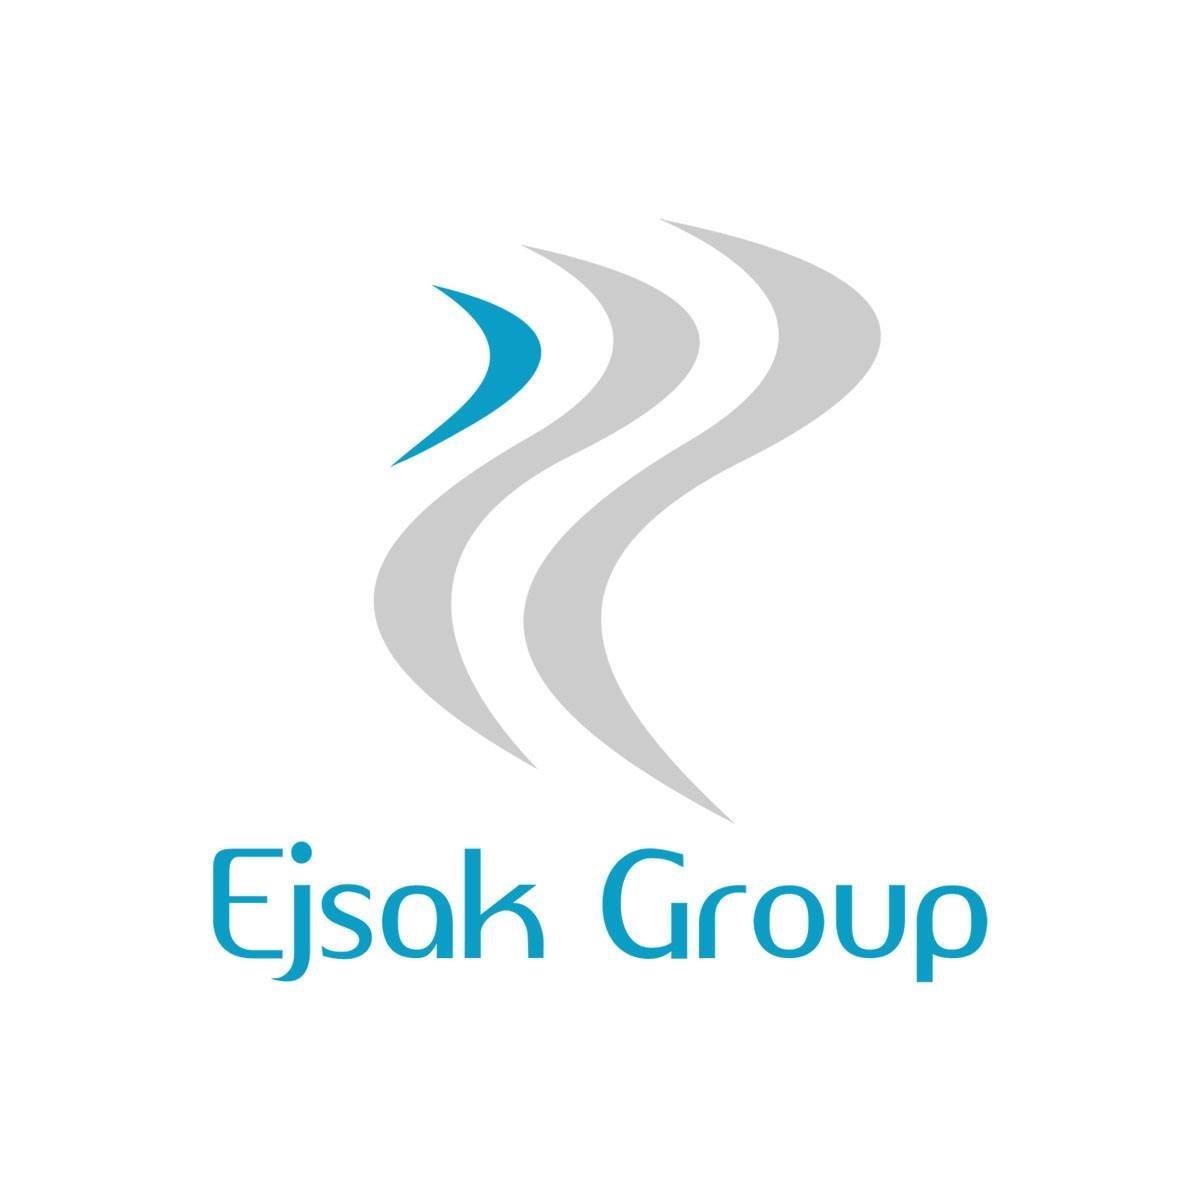 Ejsak Group